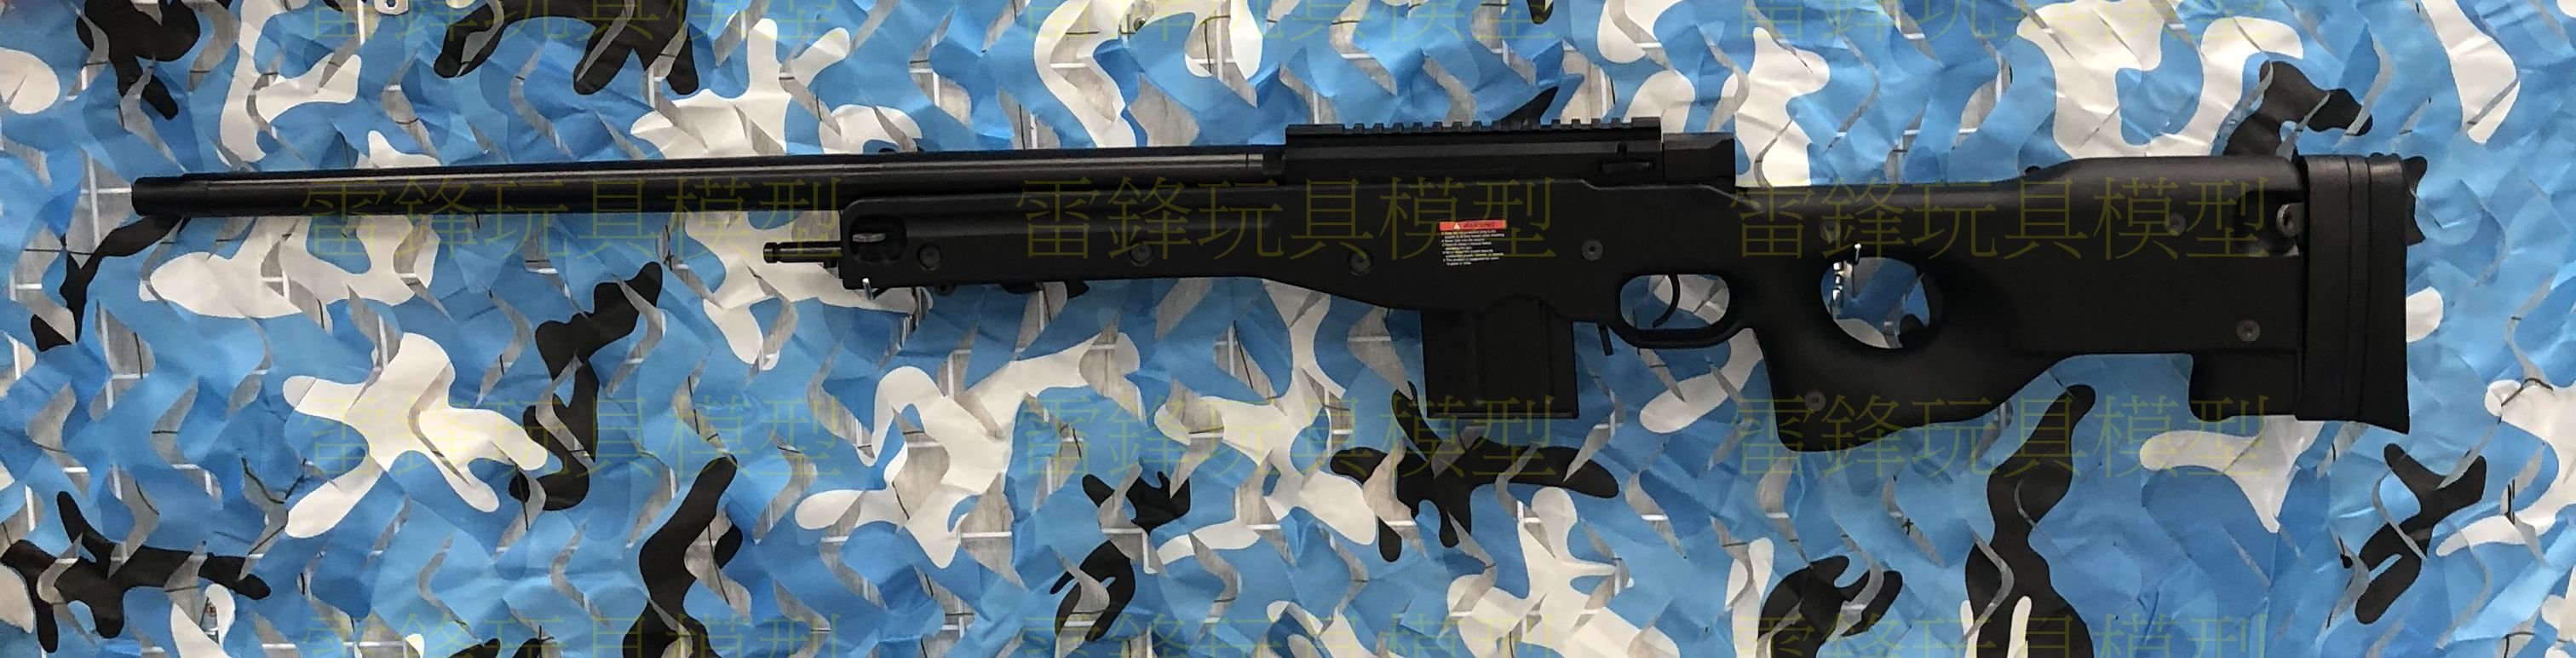 [雷鋒玩具模型]-G&amp;G G960sv 手拉空氣槍(黑) (瓦斯 CO2 BB彈 狙擊槍 紅外線 矽油)